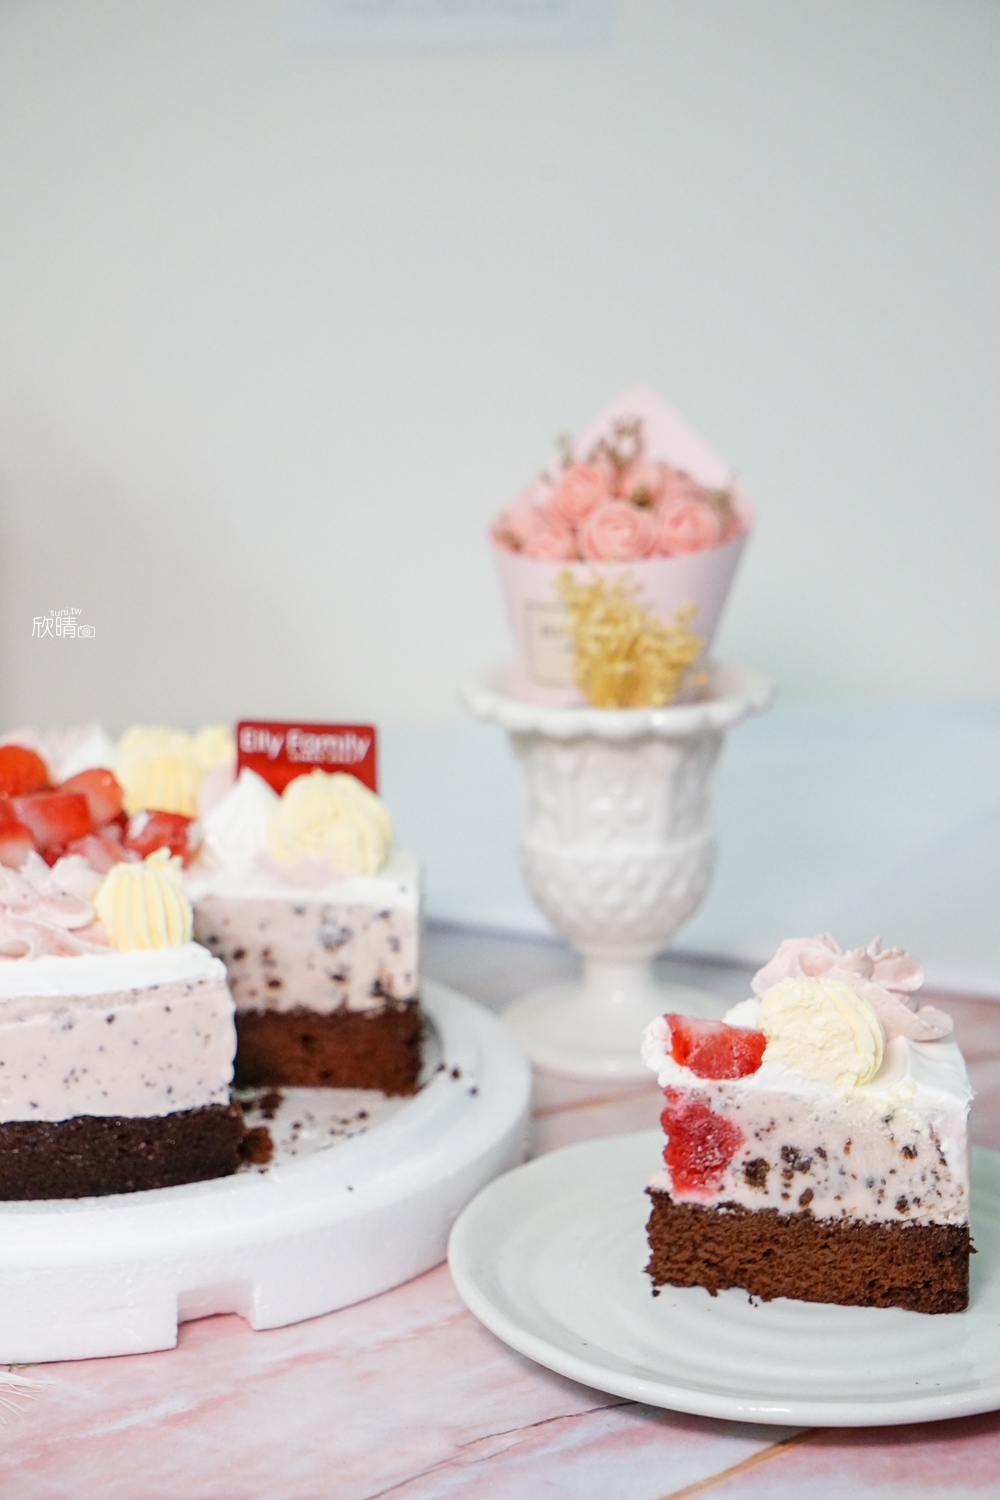 新竹生日蛋糕推薦｜艾立蛋糕。森林系絕美栗子蛋糕、必吃草莓優格冰淇淋蛋糕